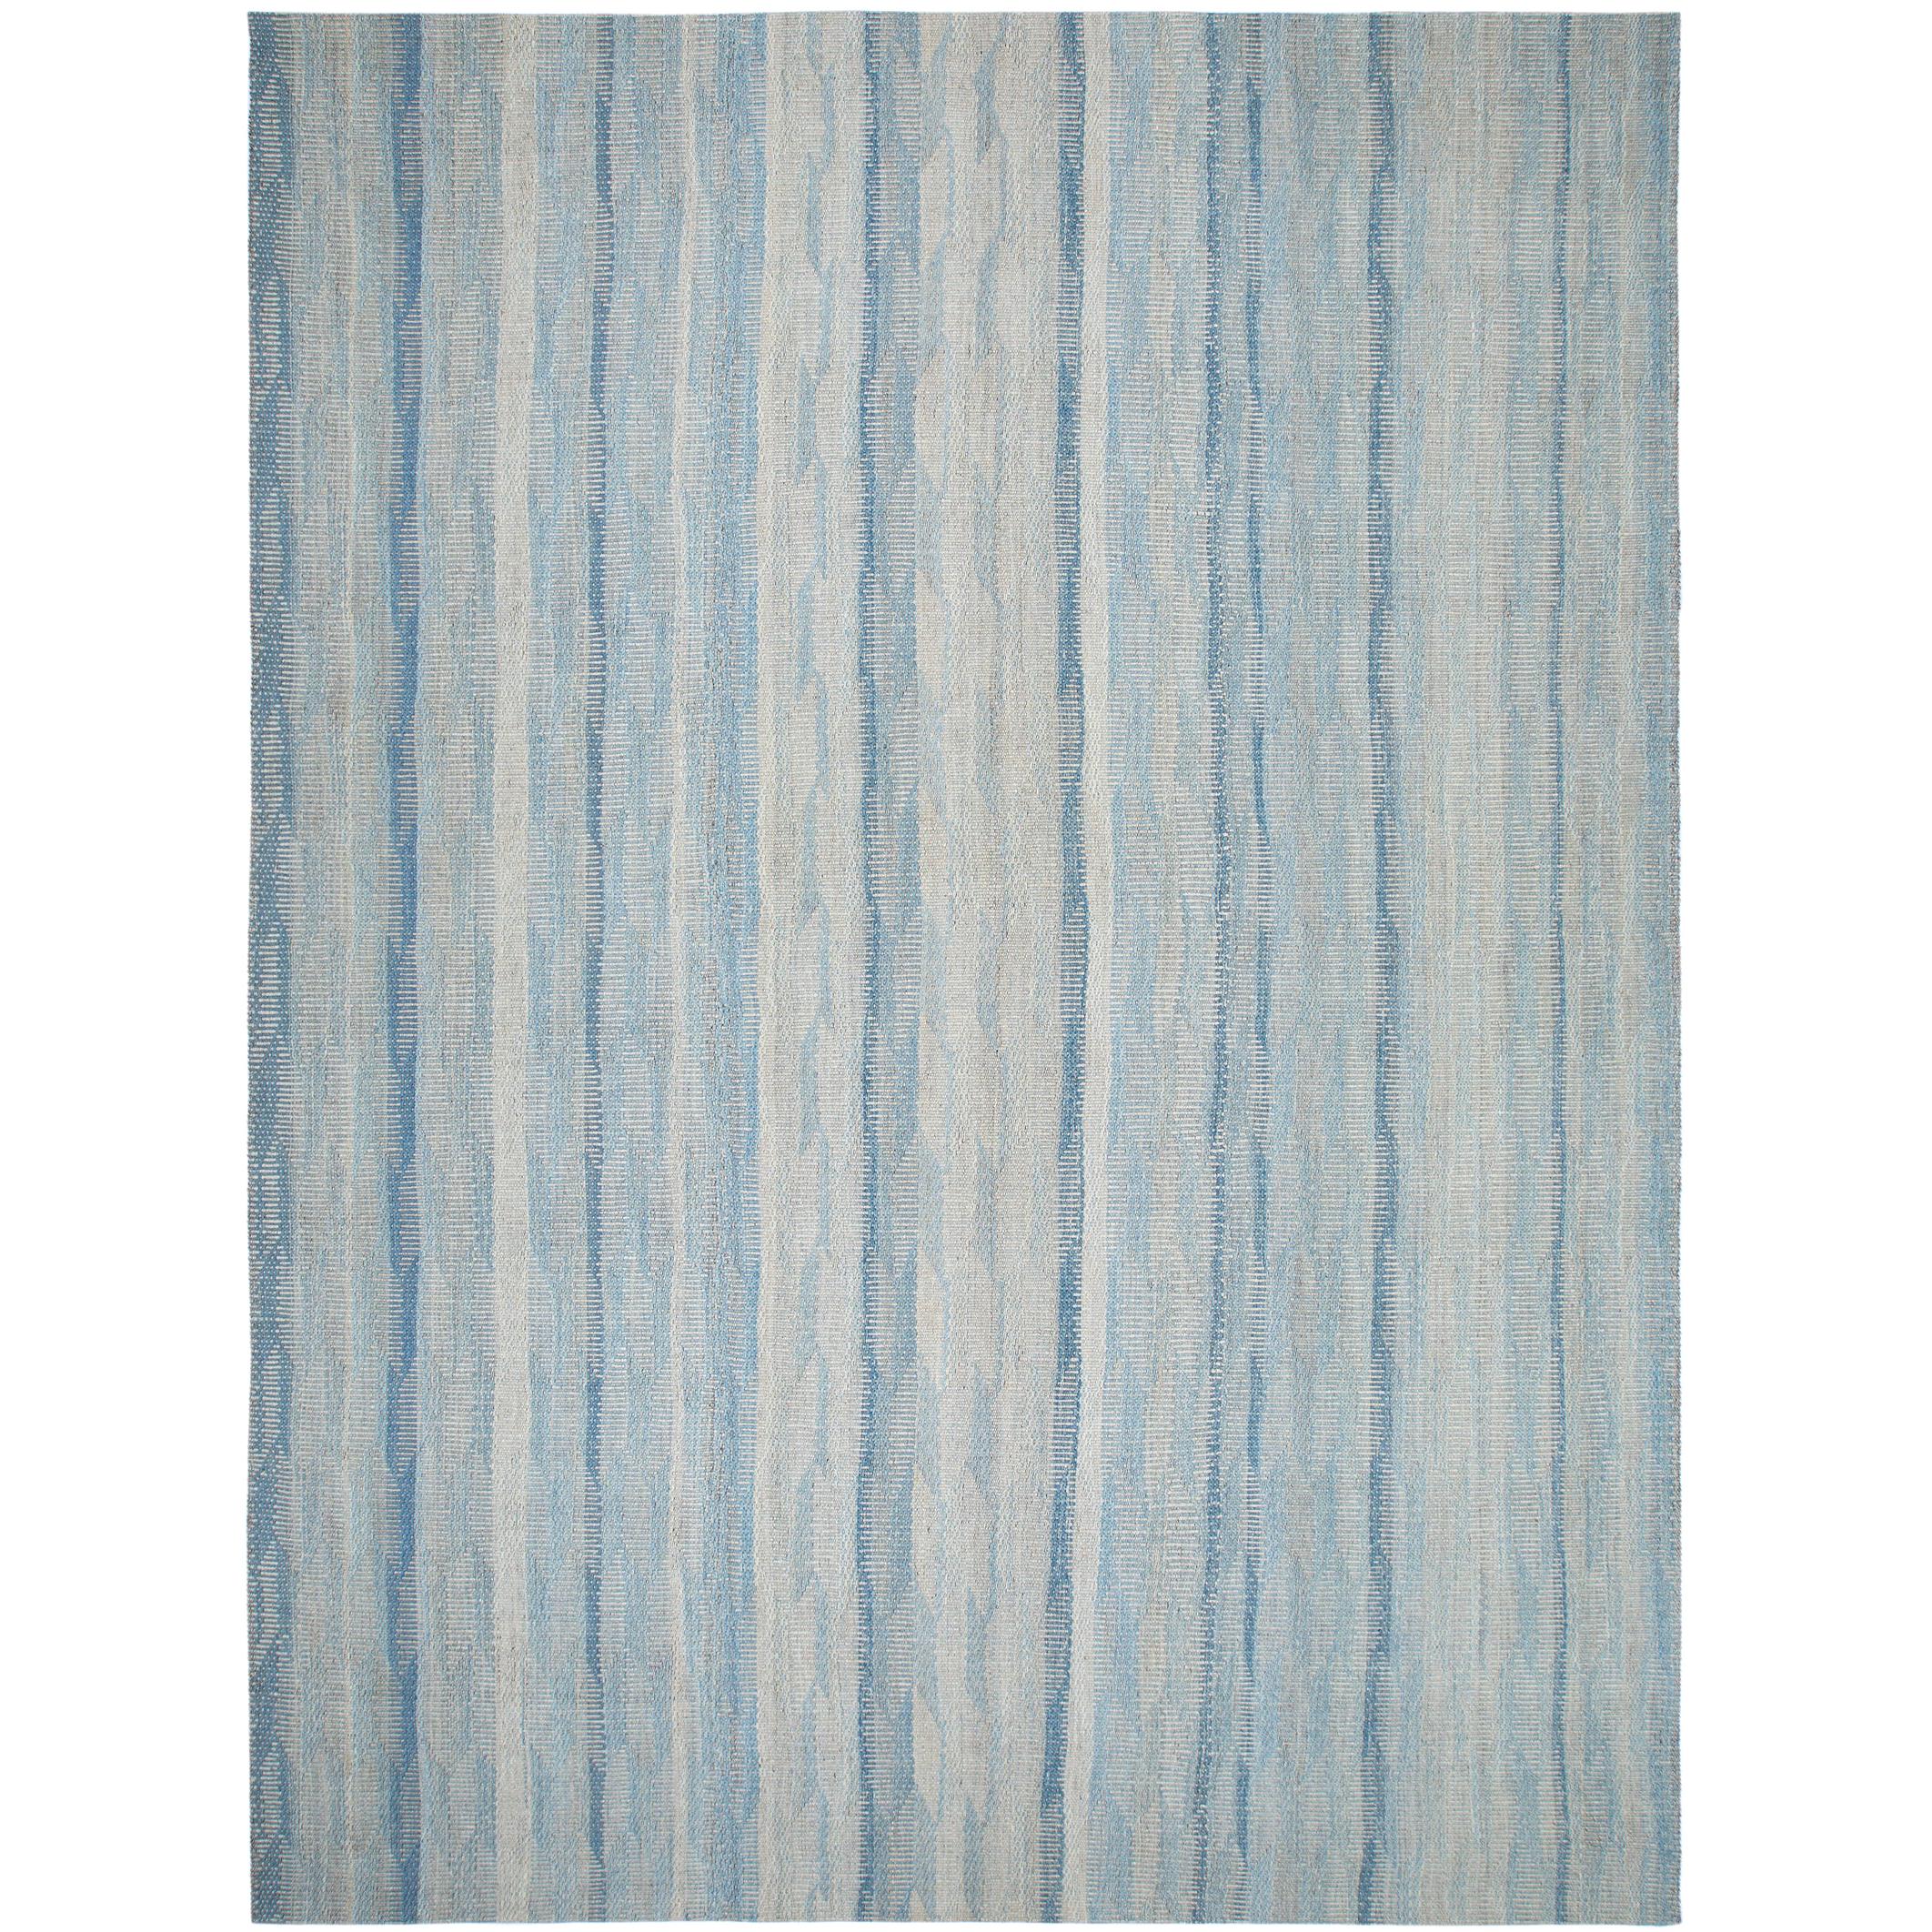 Moderner, einzigartiger handgewebter, strukturierter Flachgewebe-Teppich in Blautönen